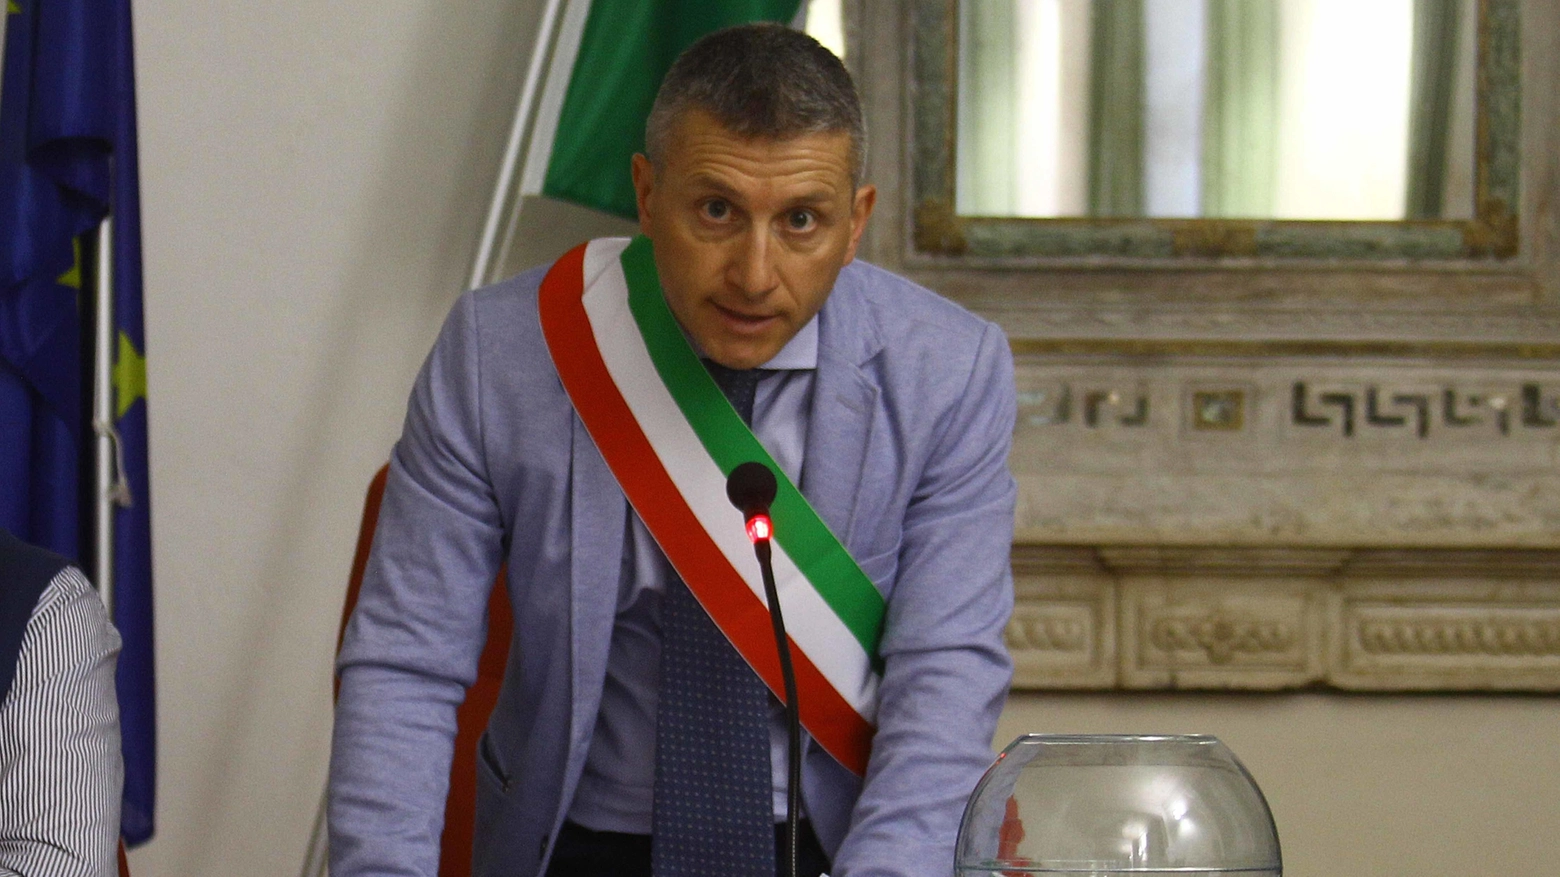 Il sindaco di Traona Maurizio Papini